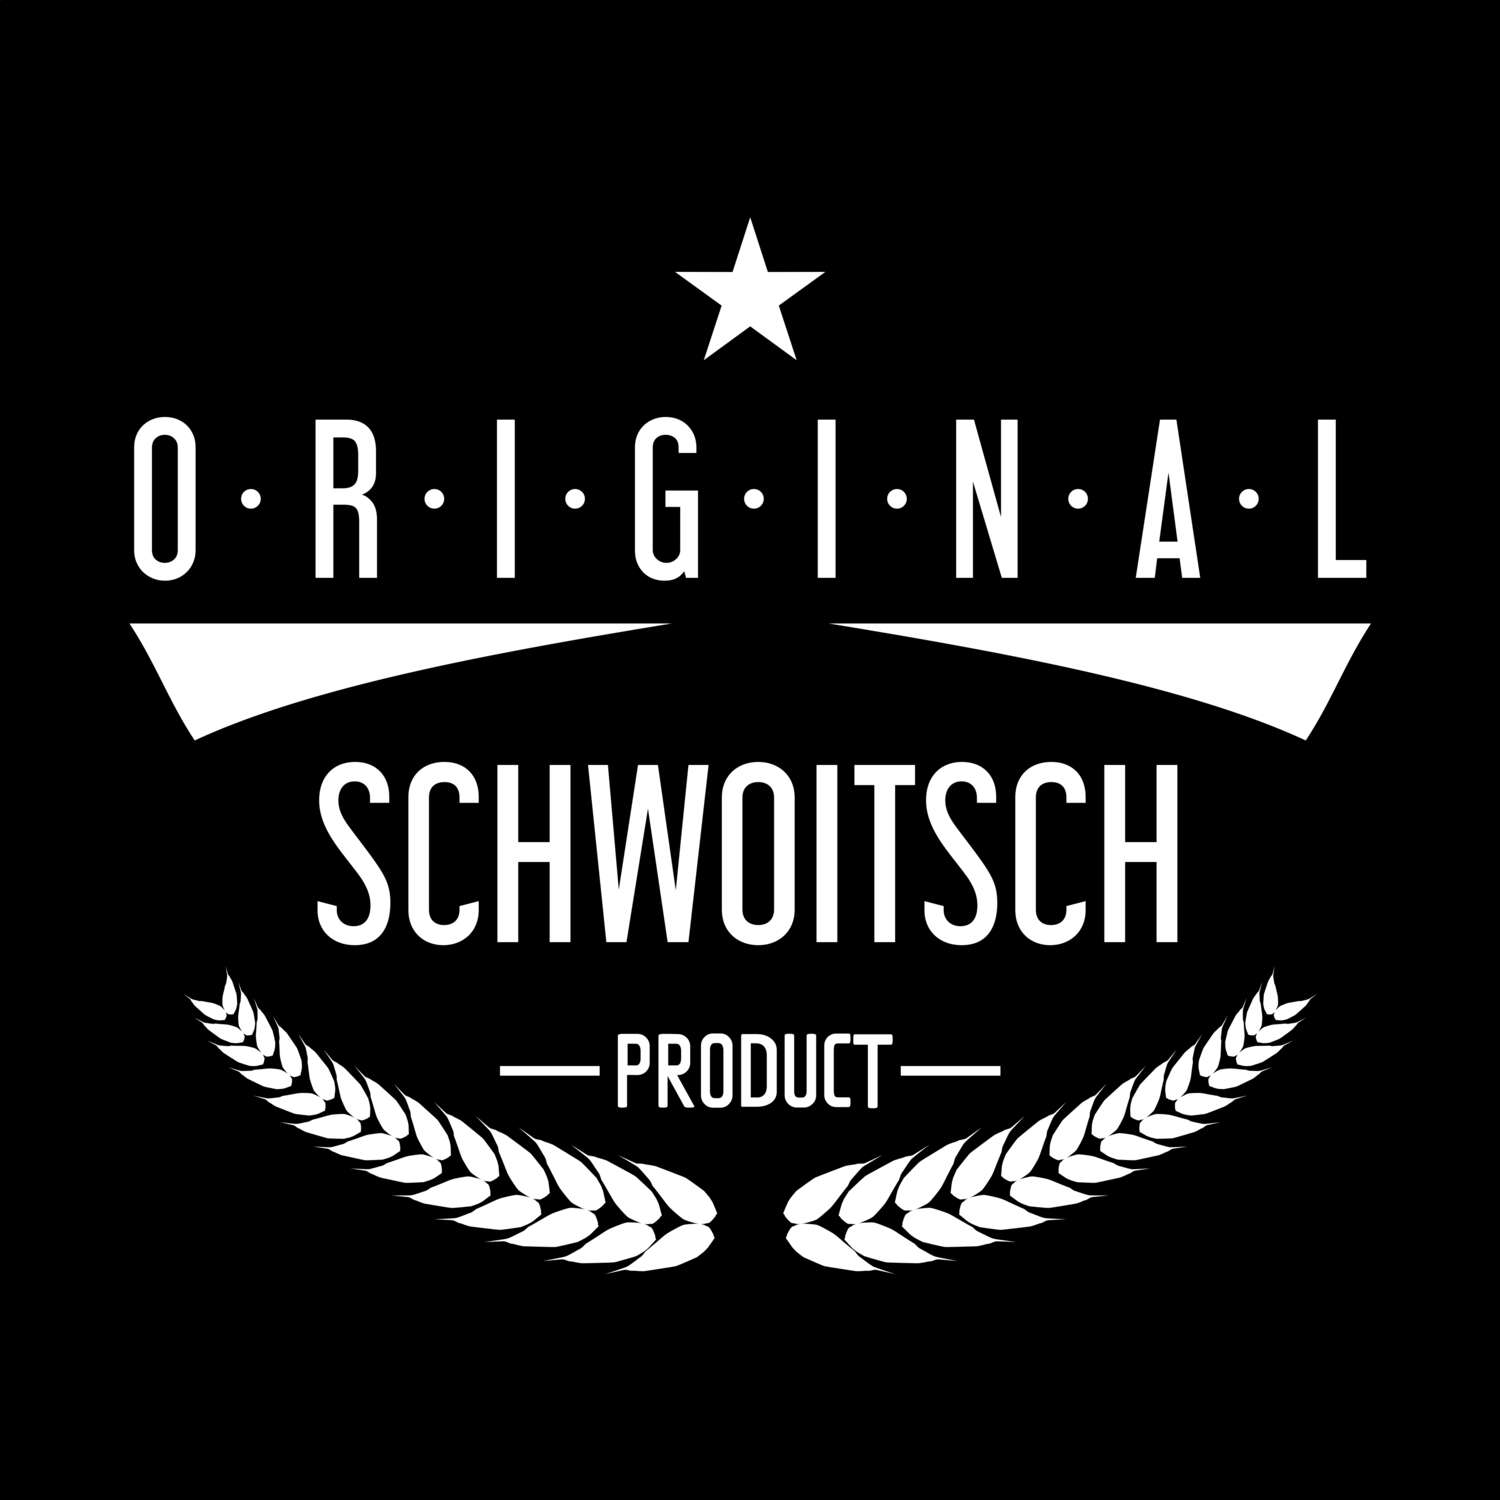 Schwoitsch T-Shirt »Original Product«